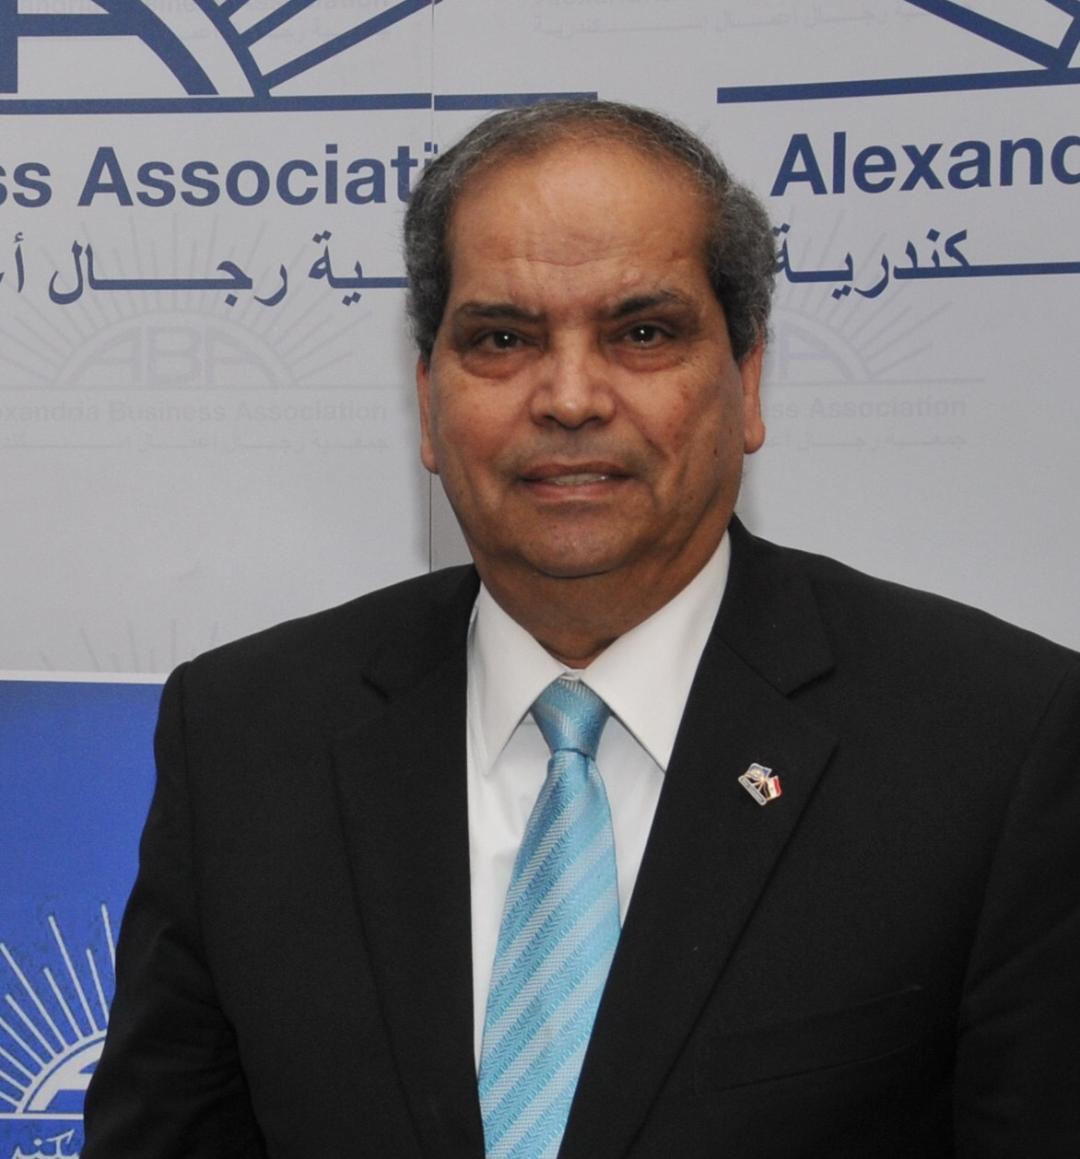   «الاستثمار والتمويل» برجال أعمال إسكندرية تنظم رحله عمل للسعودية والإمارات